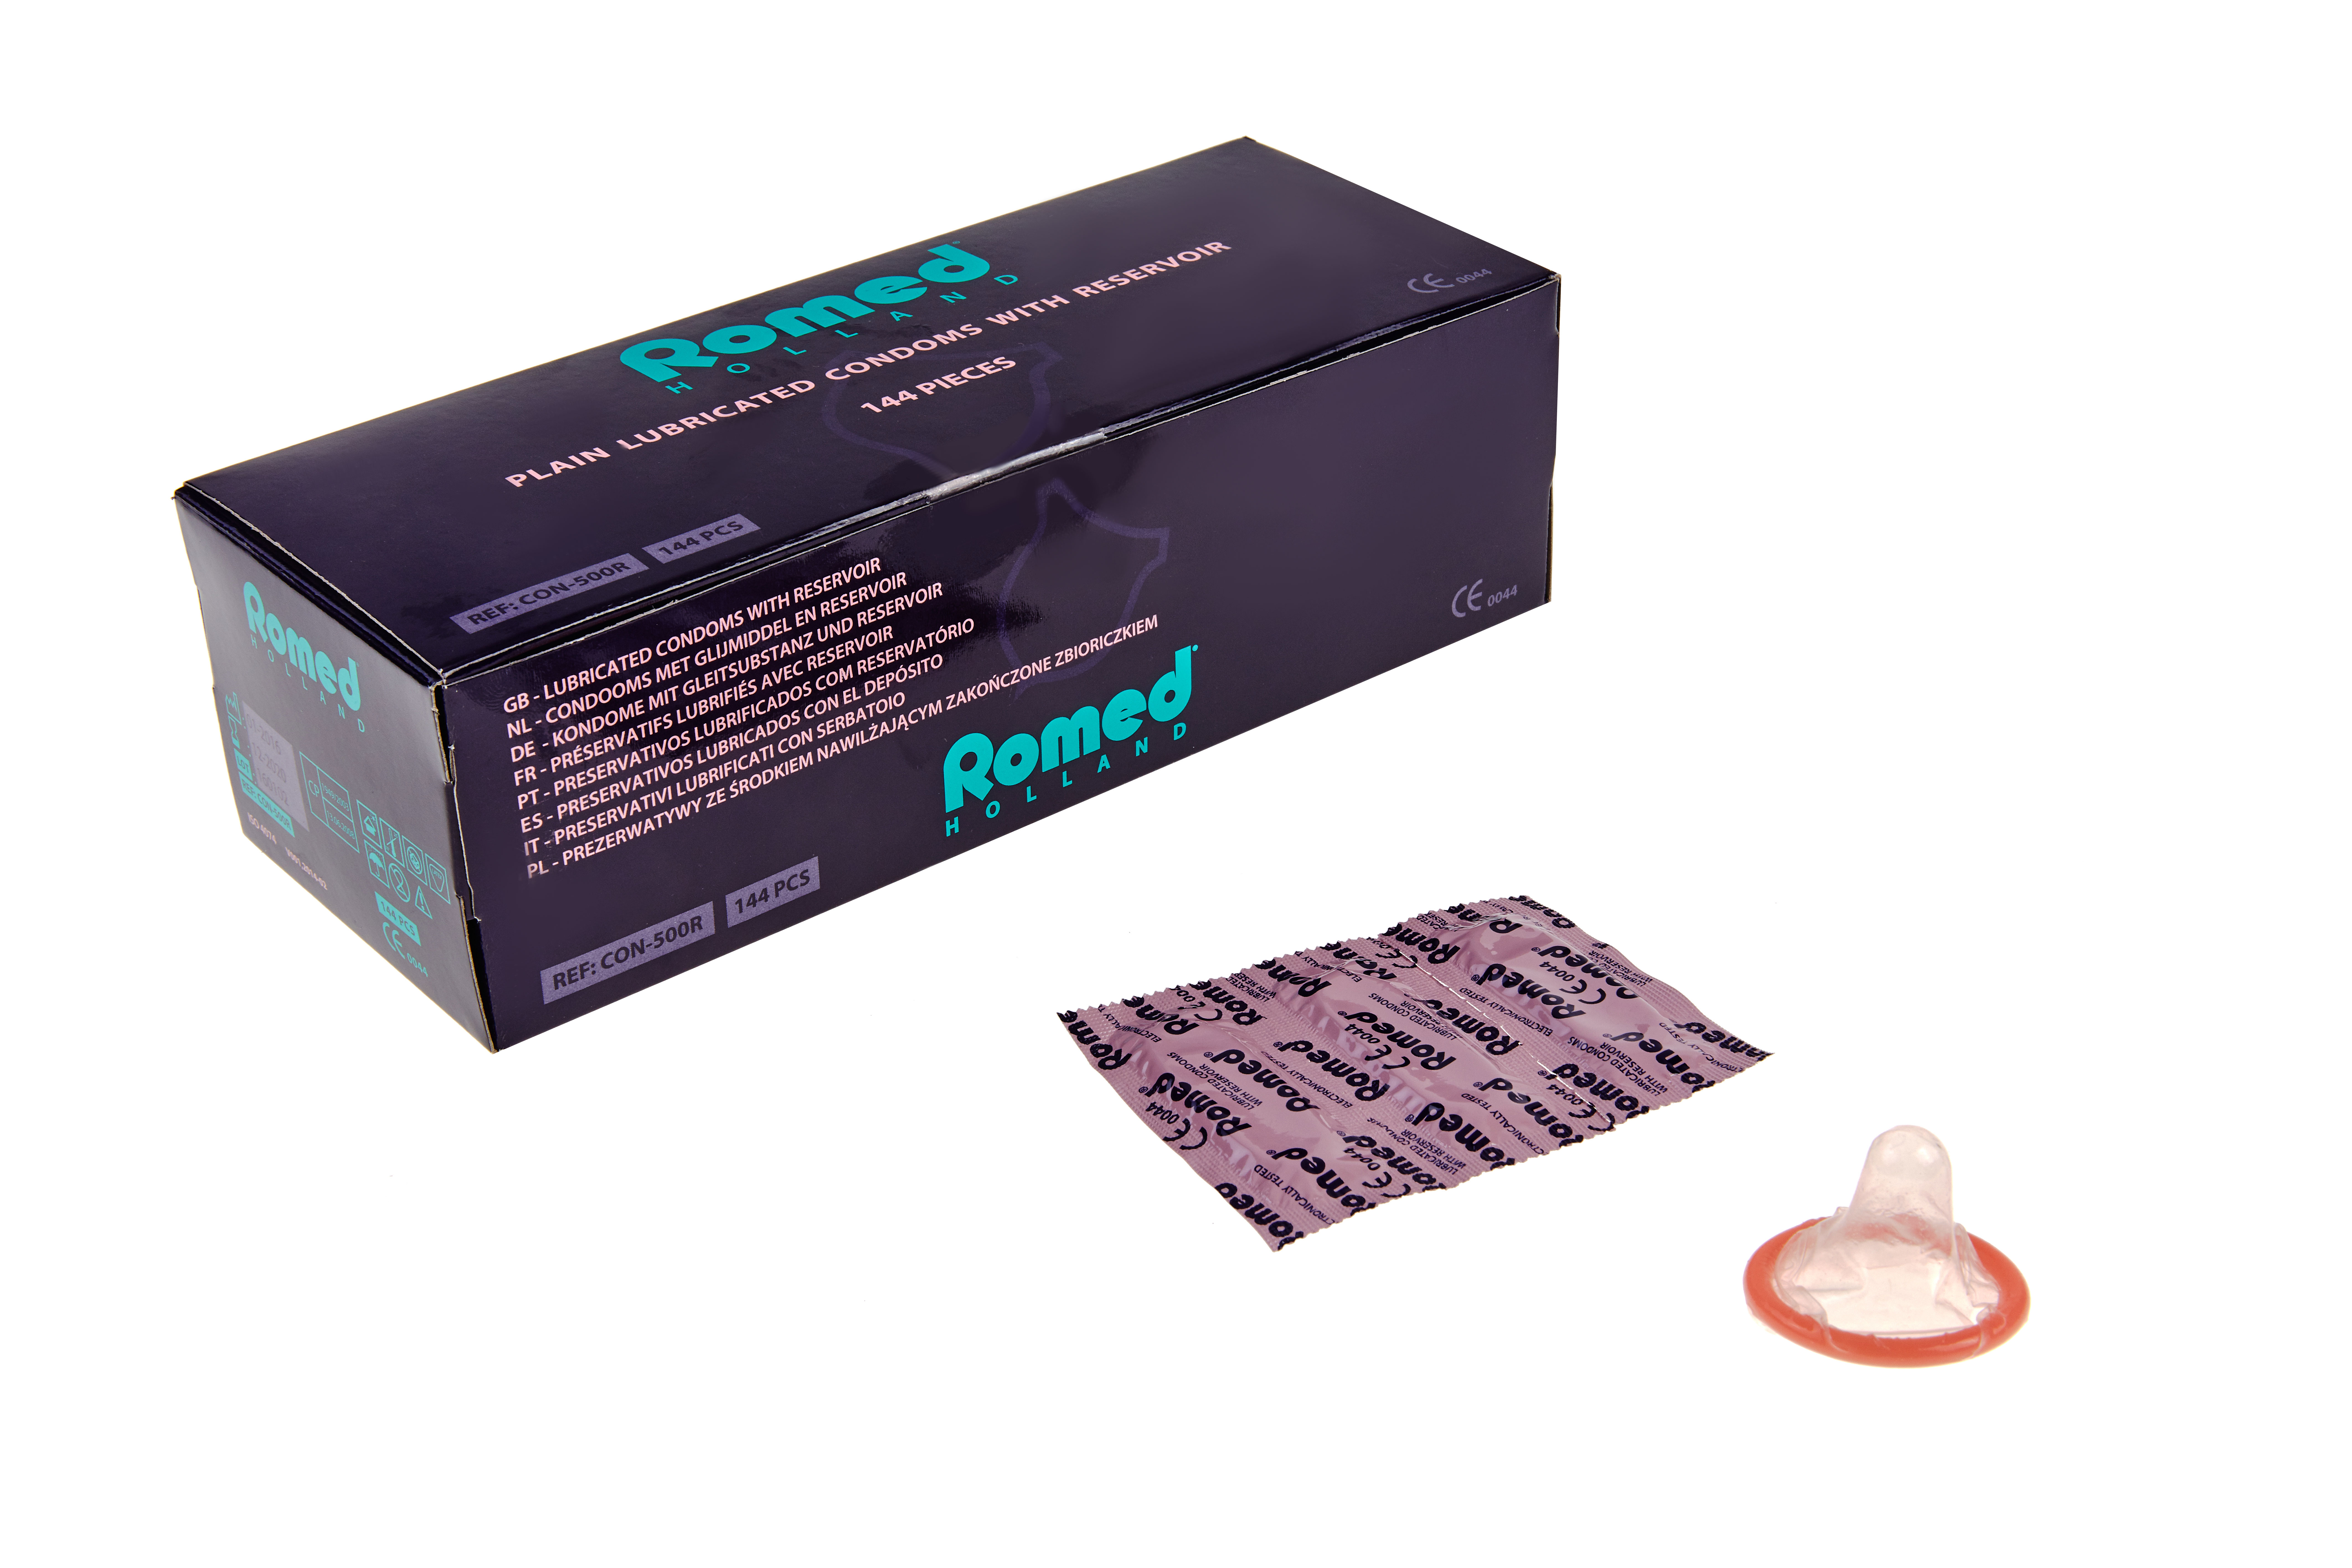 CON-500R Preservativos Romed embalados em tiras de 3 un., 48 tiras de 3 un. = 144 un. por caixa interna (= 1 por grosso), 50 x 144 un. = 7200 un. por caixa de envio.